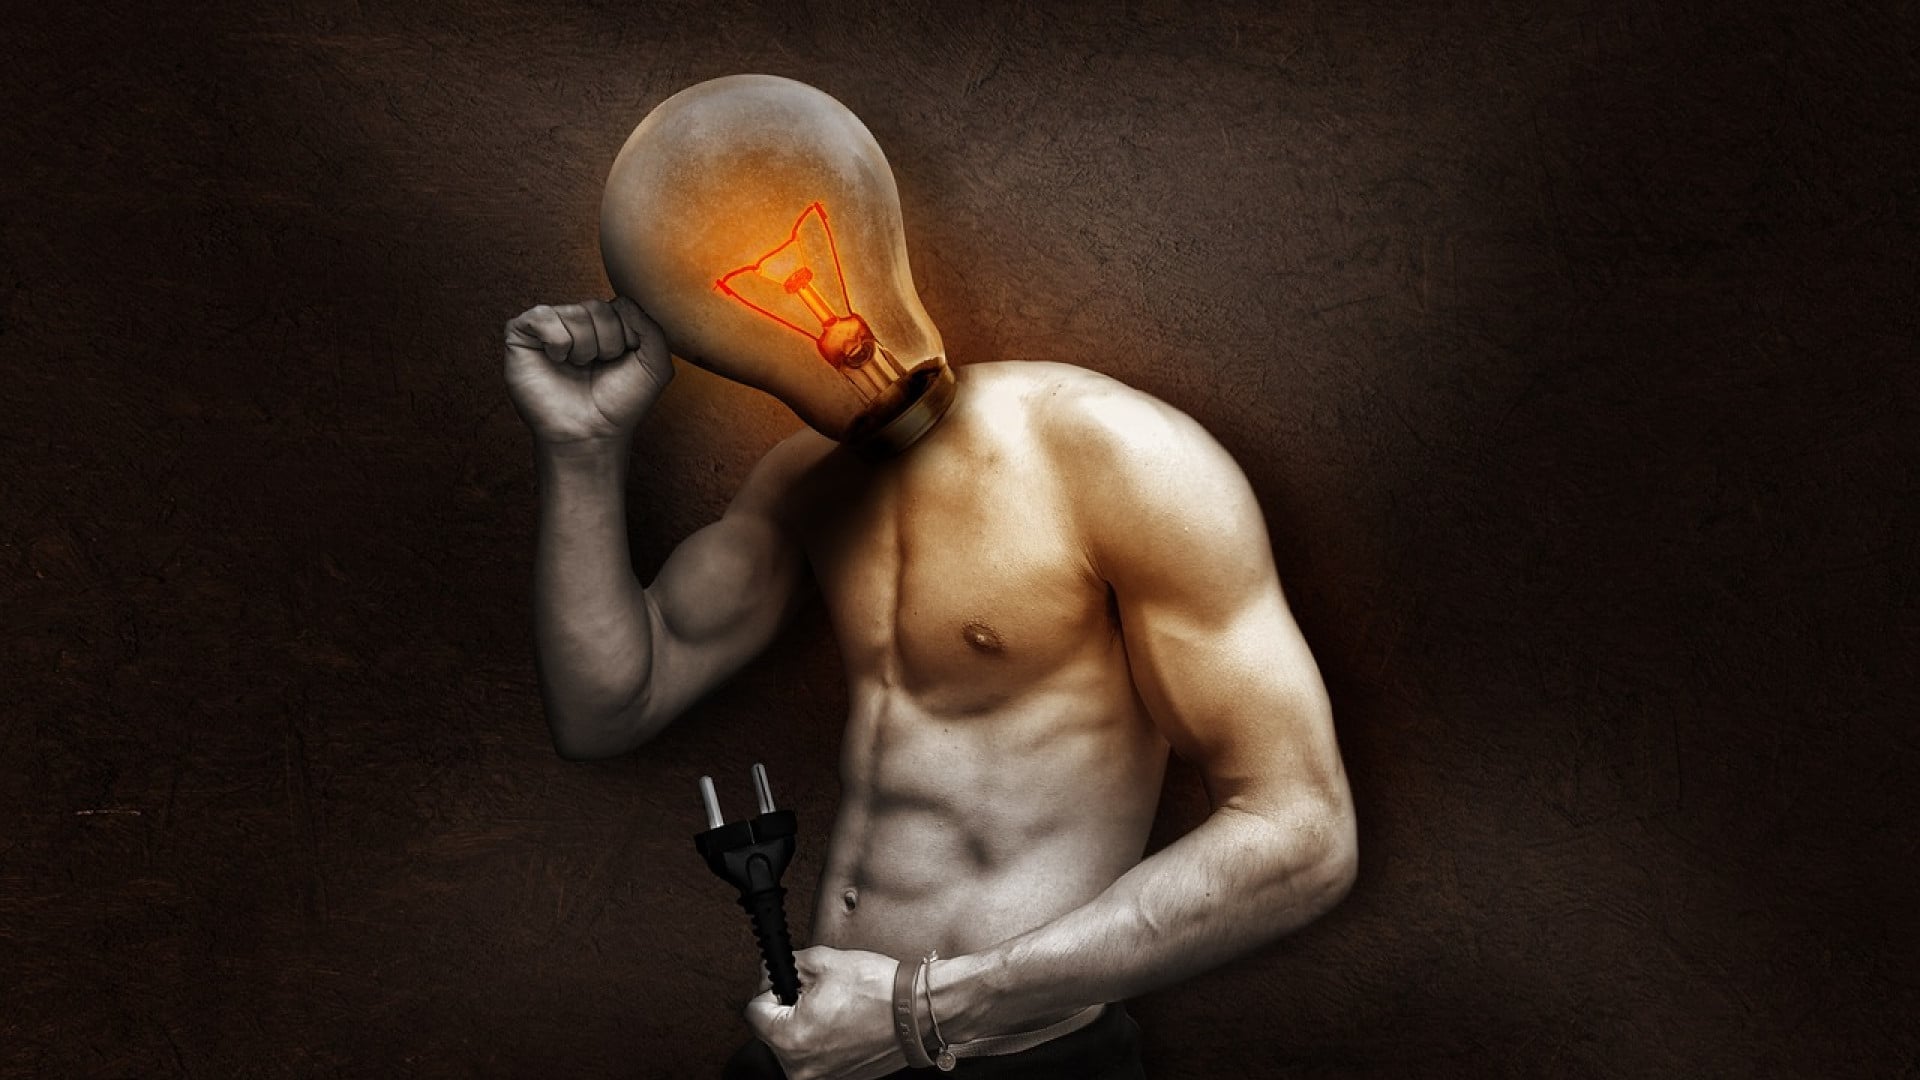 Un homme avec une ampoule en guise de tête dans une pose de réflexion tenant une prise électrique pour booster l’énergie.